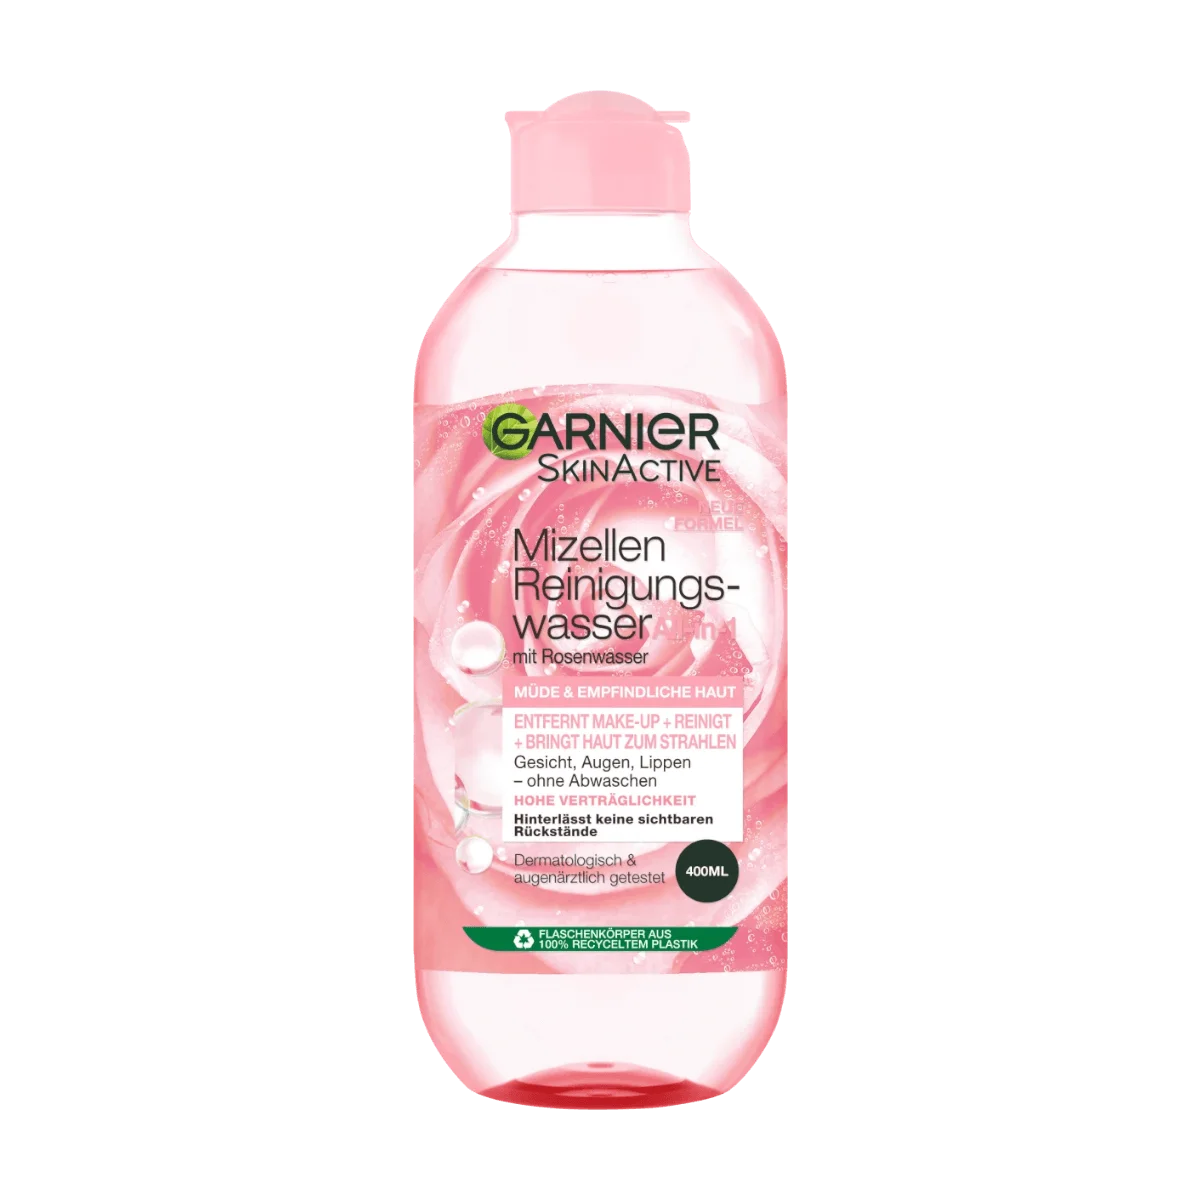 Garnier SkinActive + Reinigungswasser Allin1 Rosenwasser